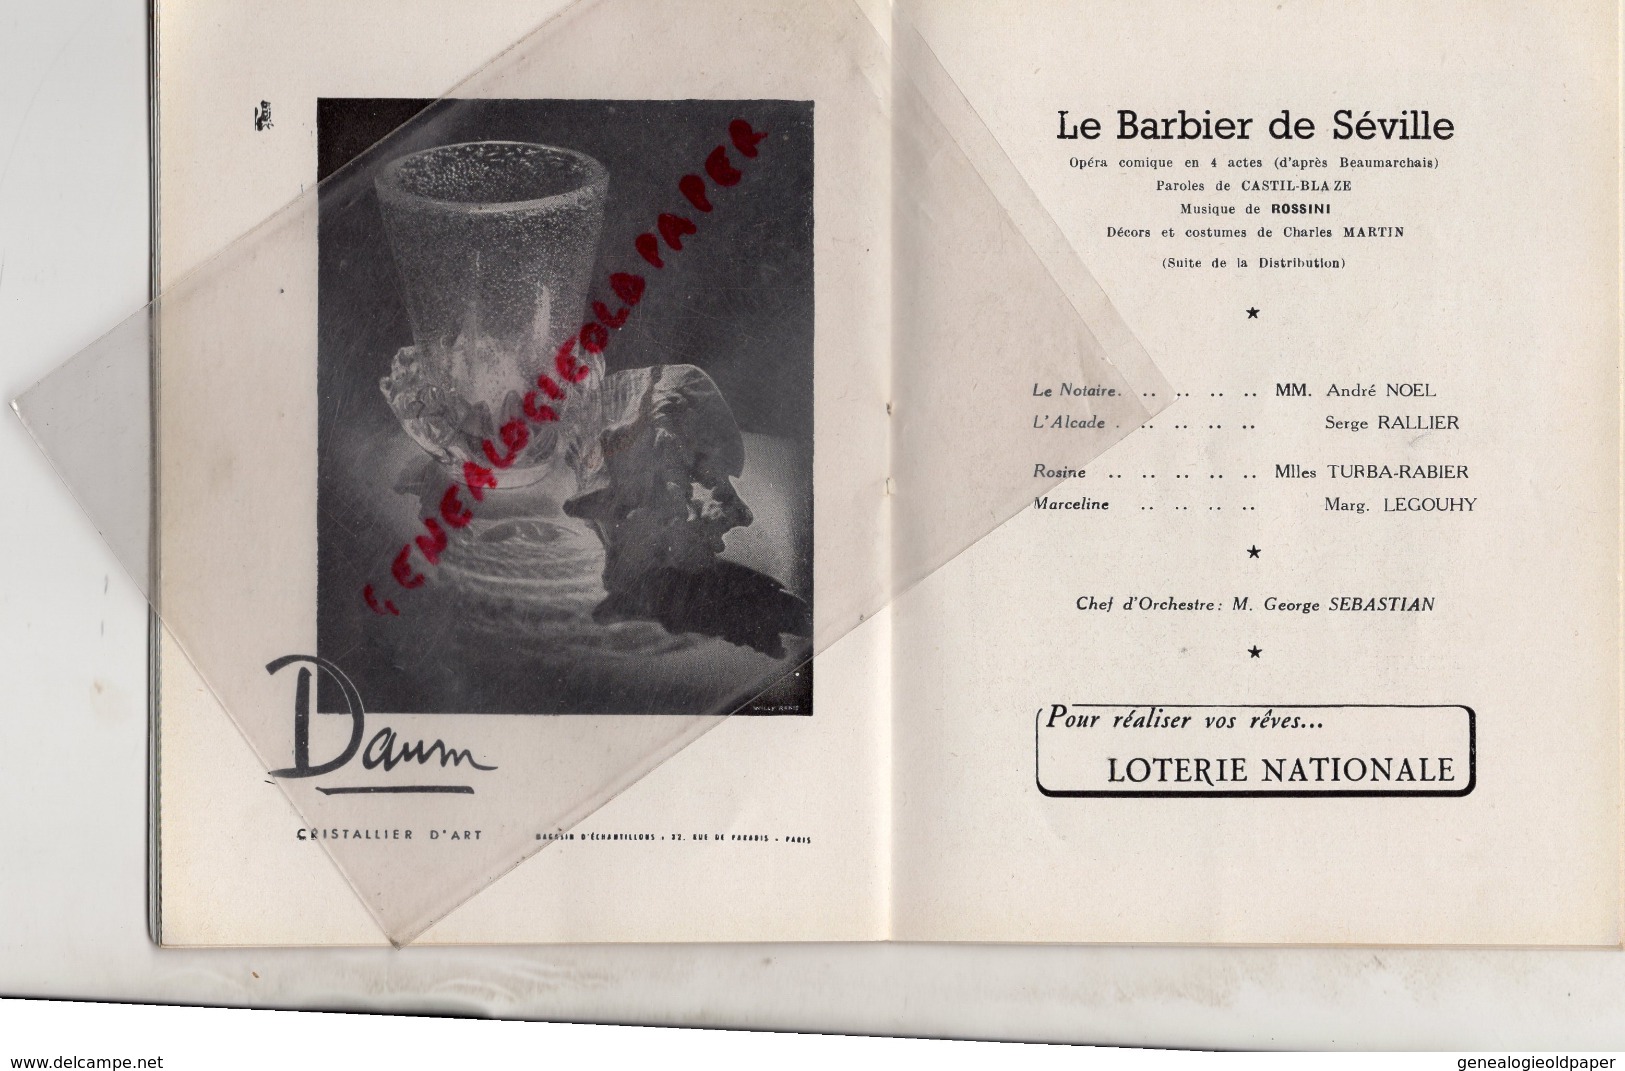 THEATRE NATIONAL DE L' OPERA COMIQUE - LE BARBIER DE SEVILLE-9 JUIN 1951- BAUDECROUX-TURBA RABIER-AMADE-LEGOUHY-CLEMENT